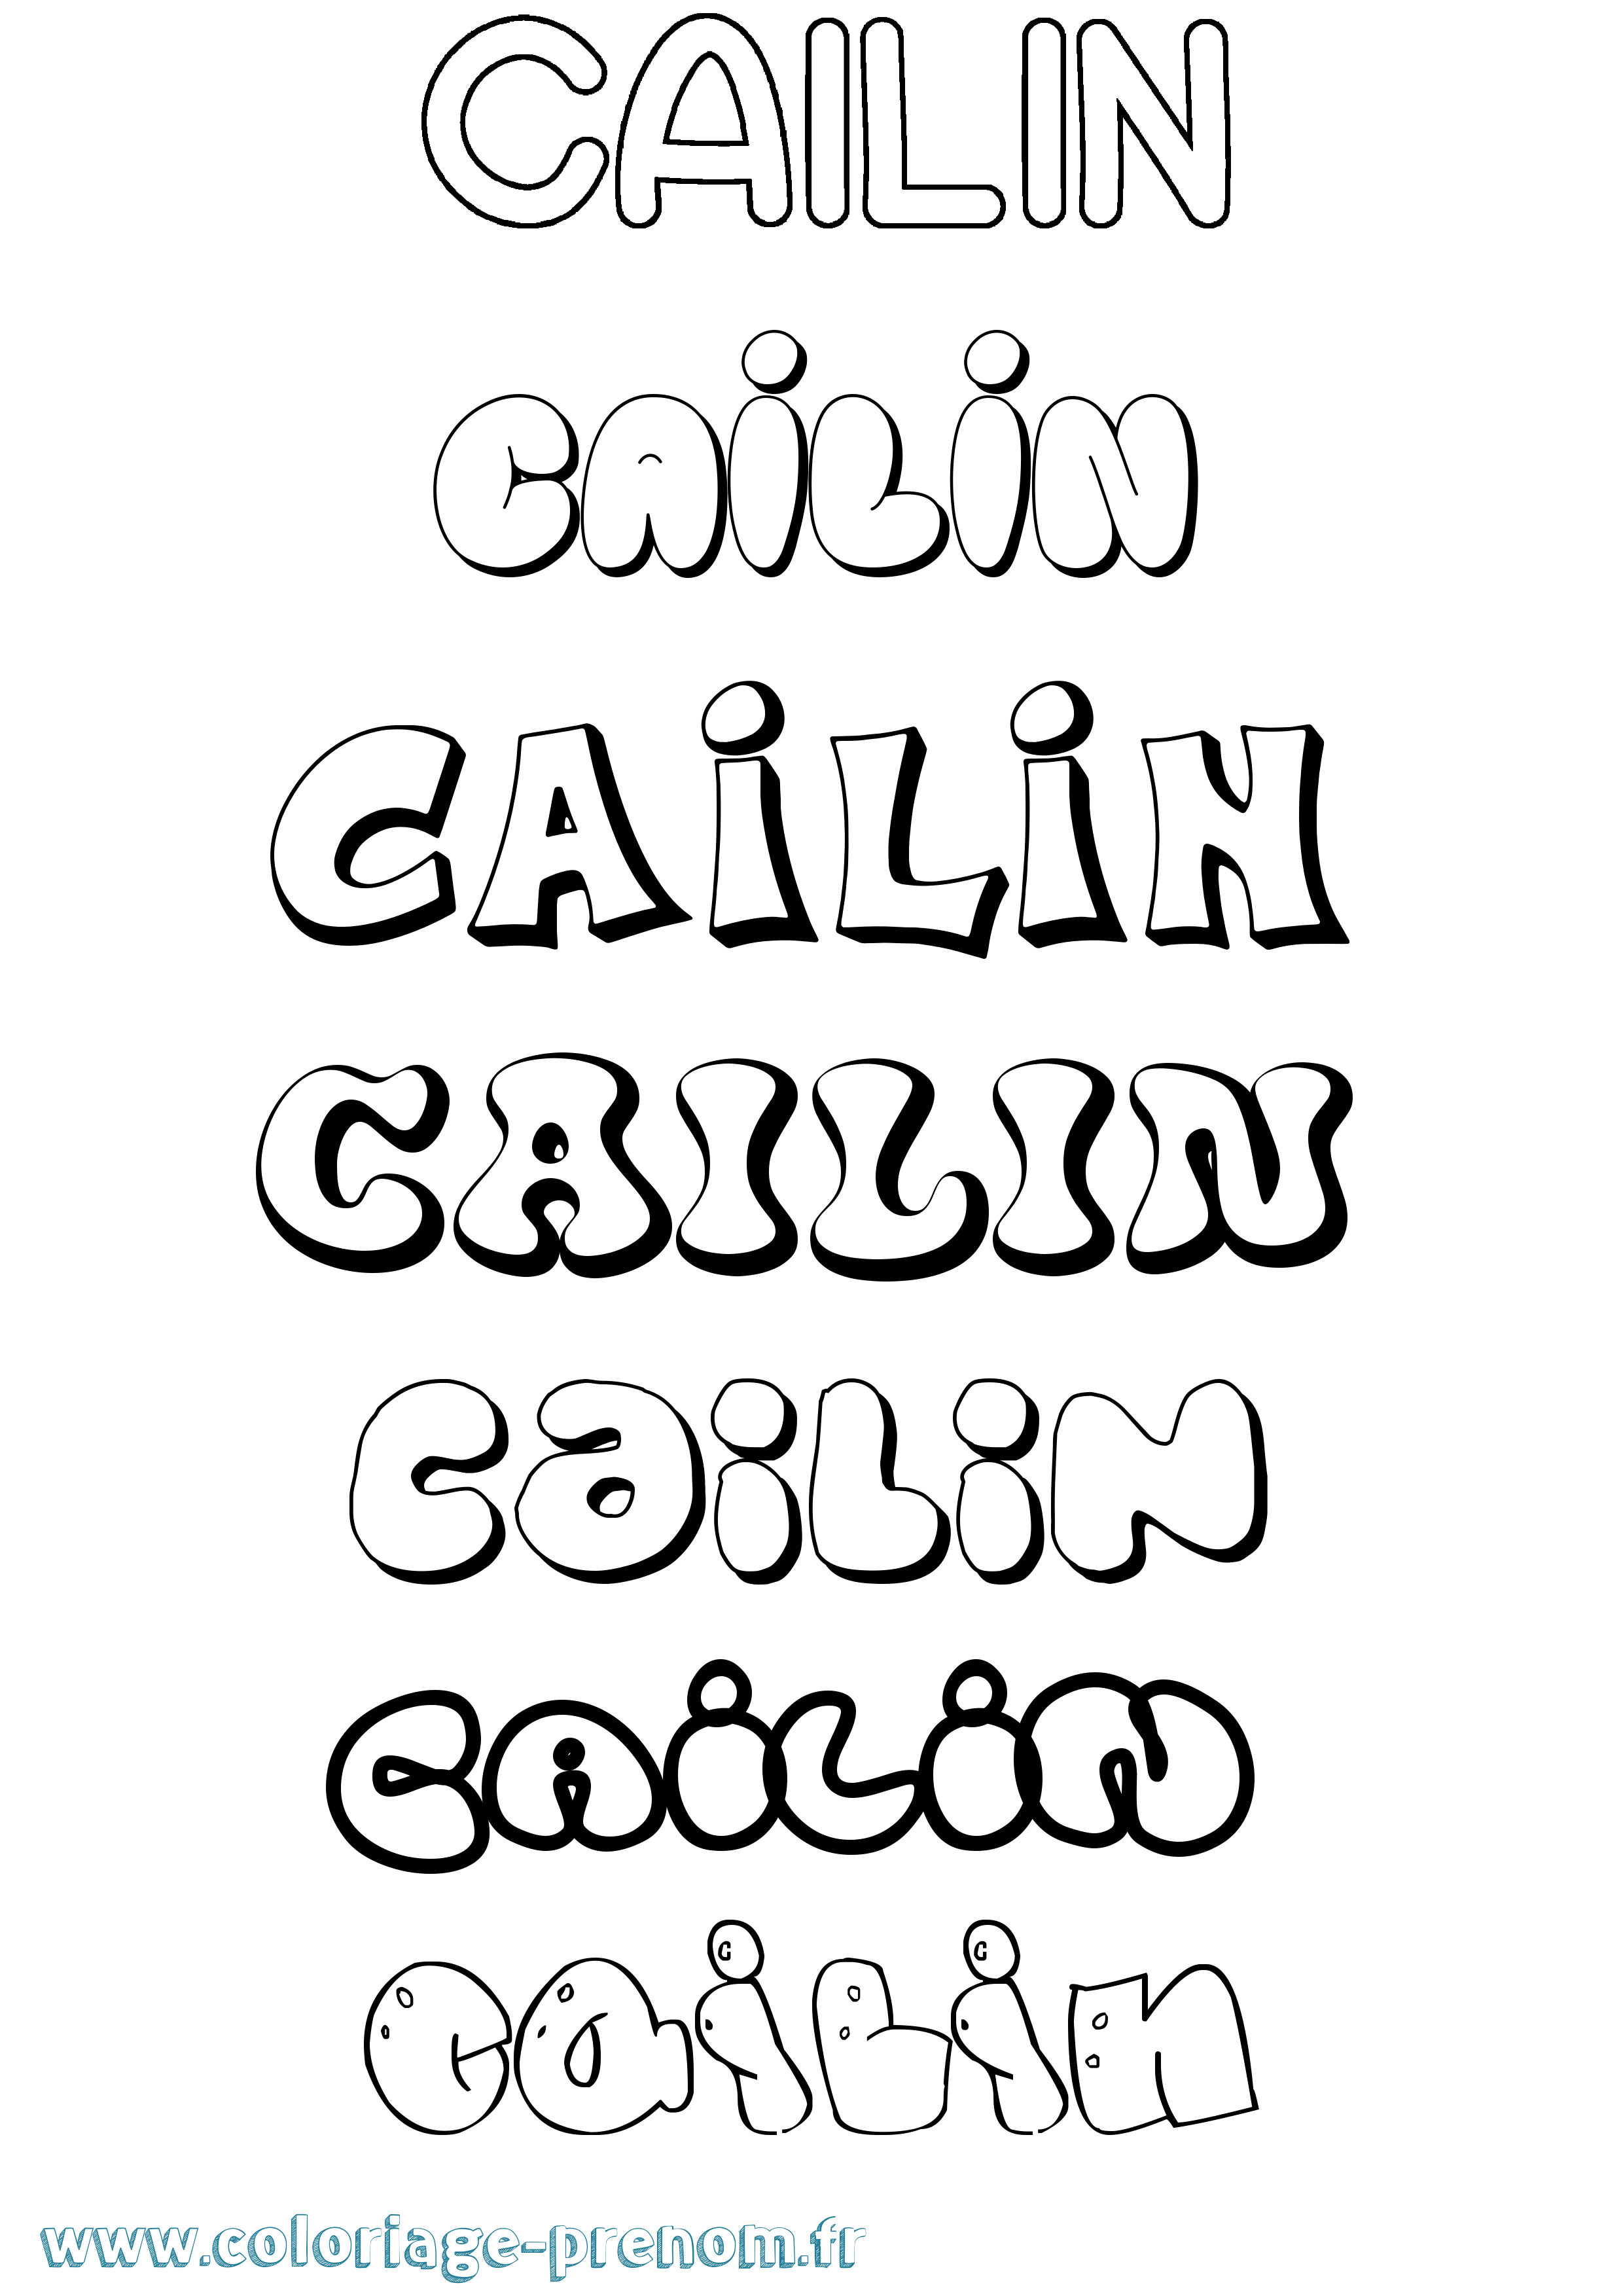 Coloriage prénom Cailin Bubble